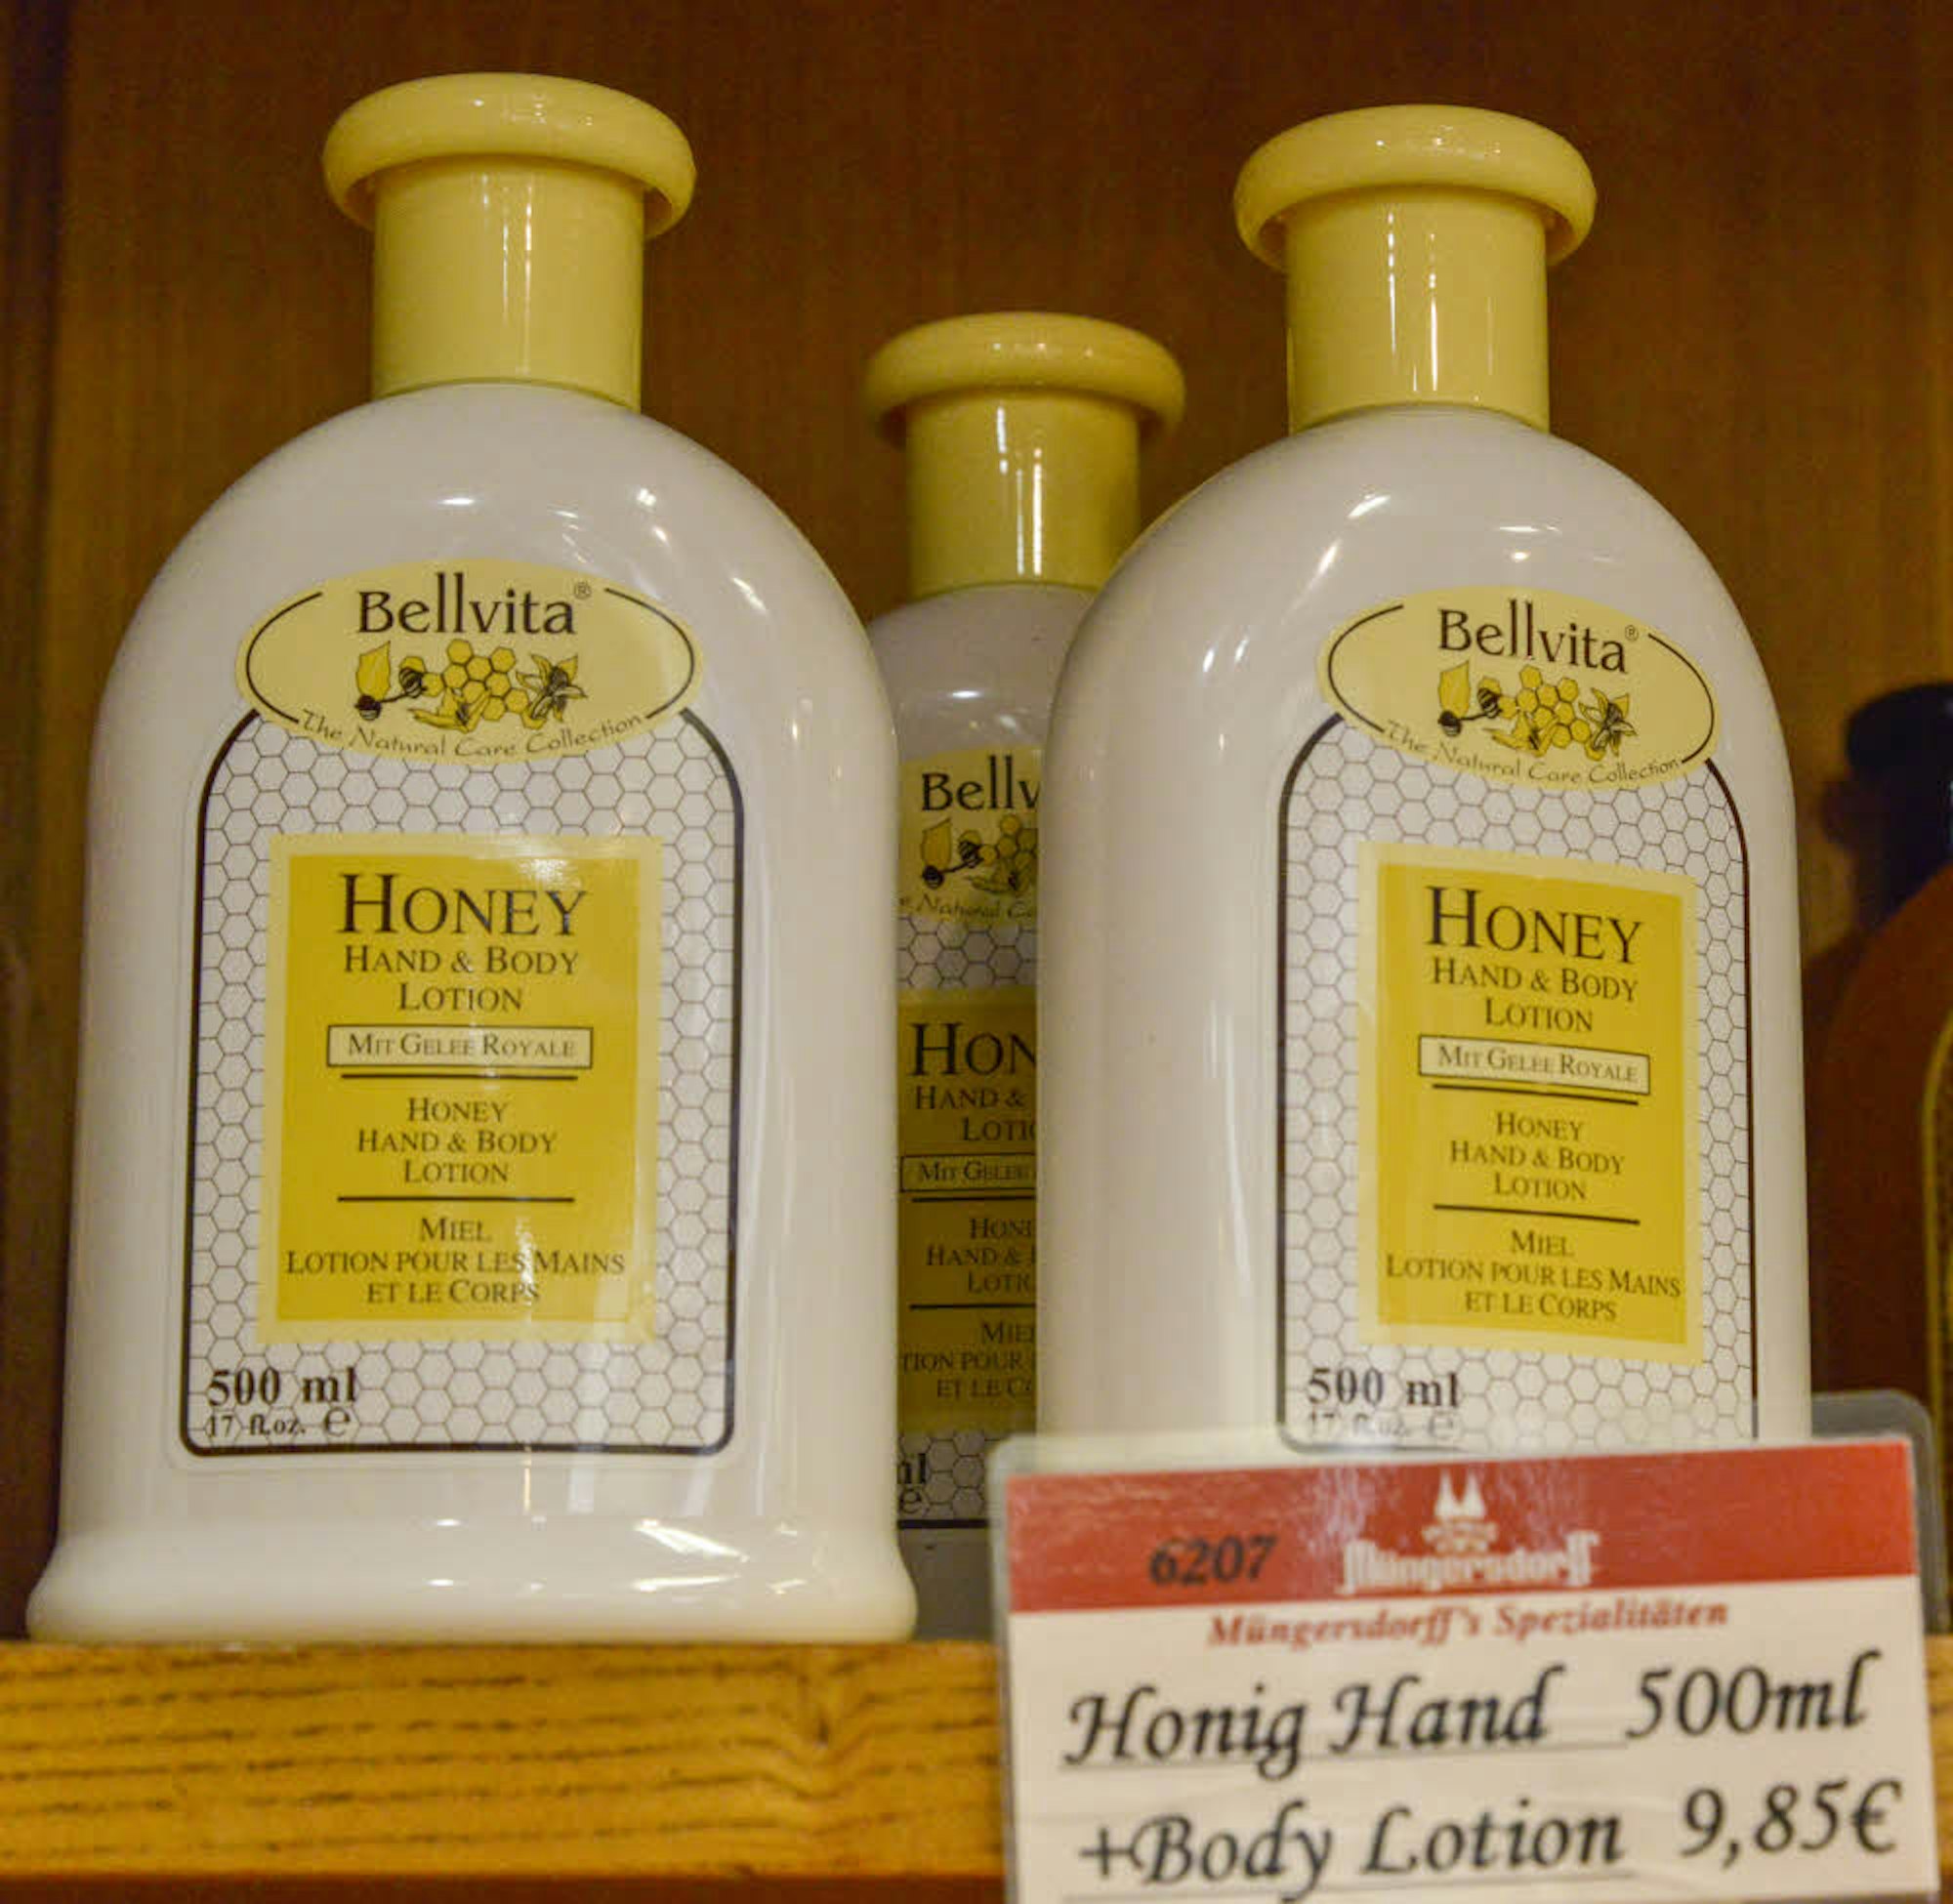 Im Laden gibt es auch Body Lotion mit Honig.